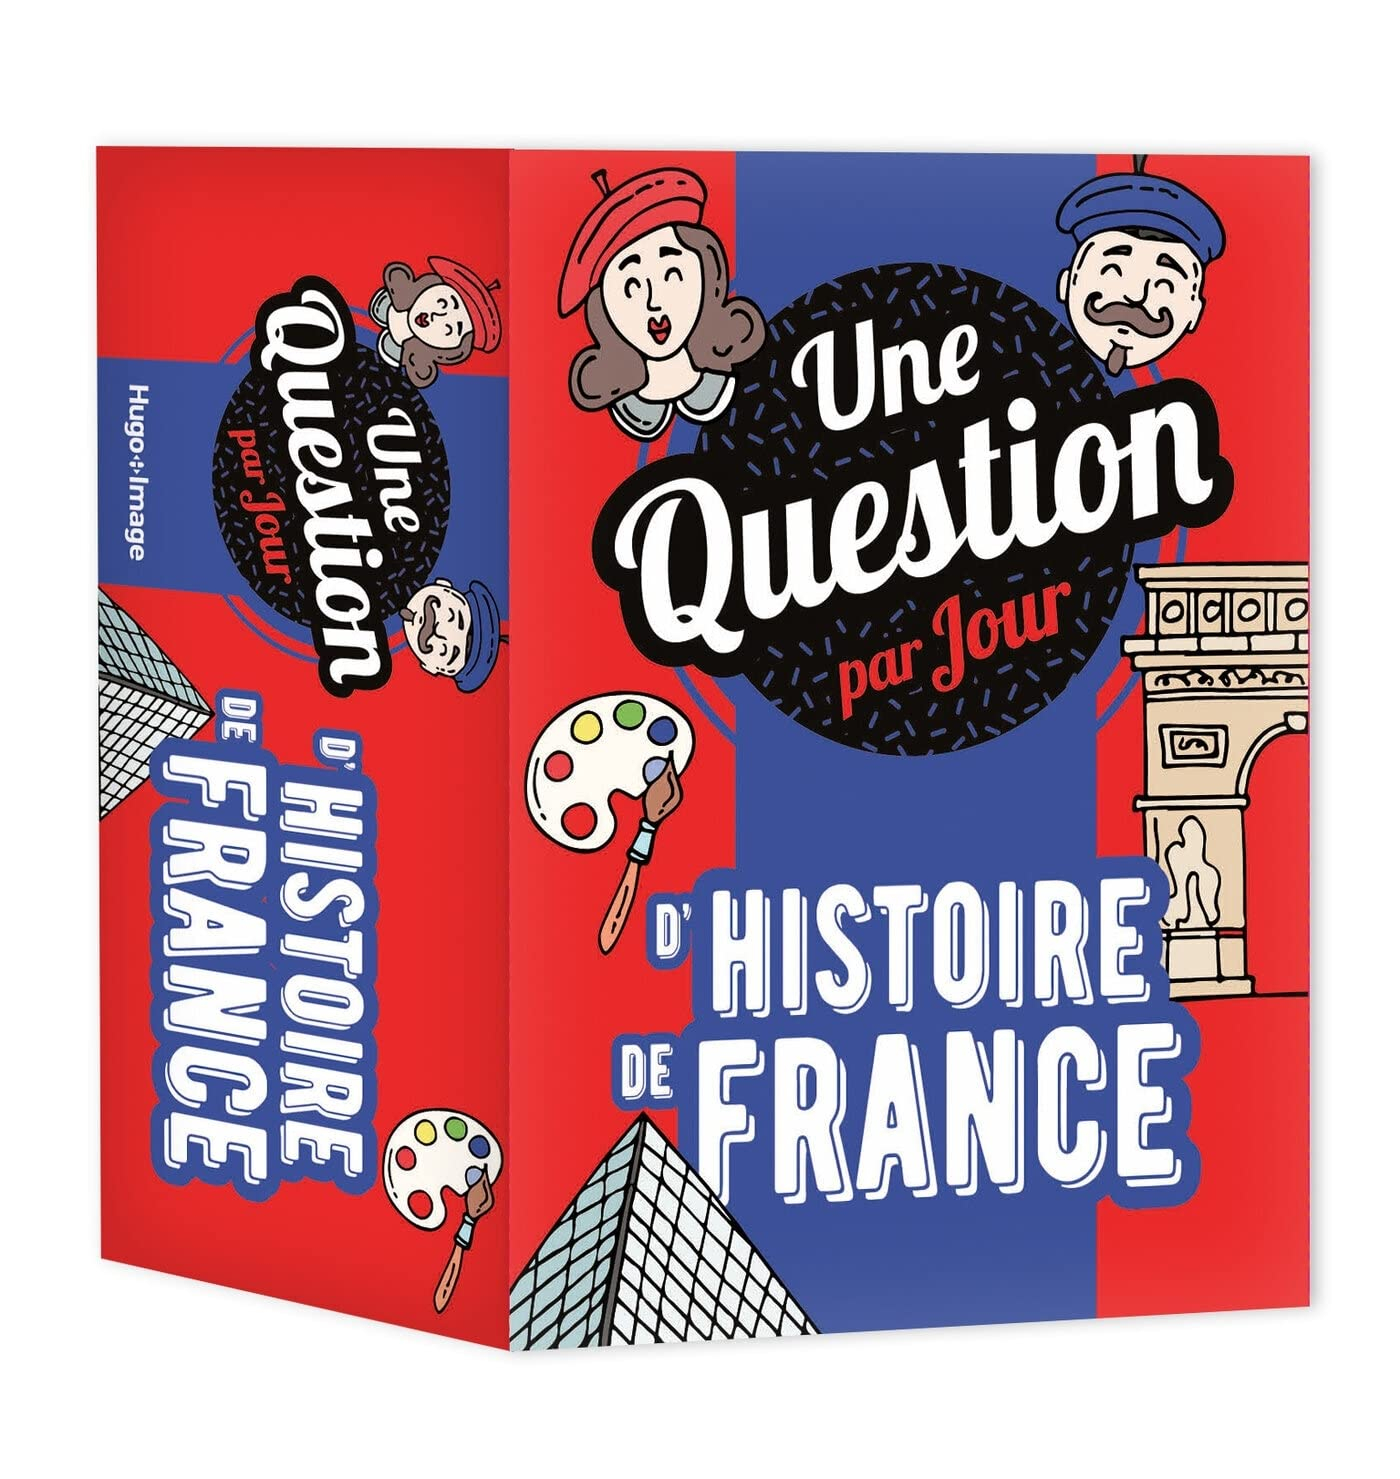 Une question par jour d'histoire de France